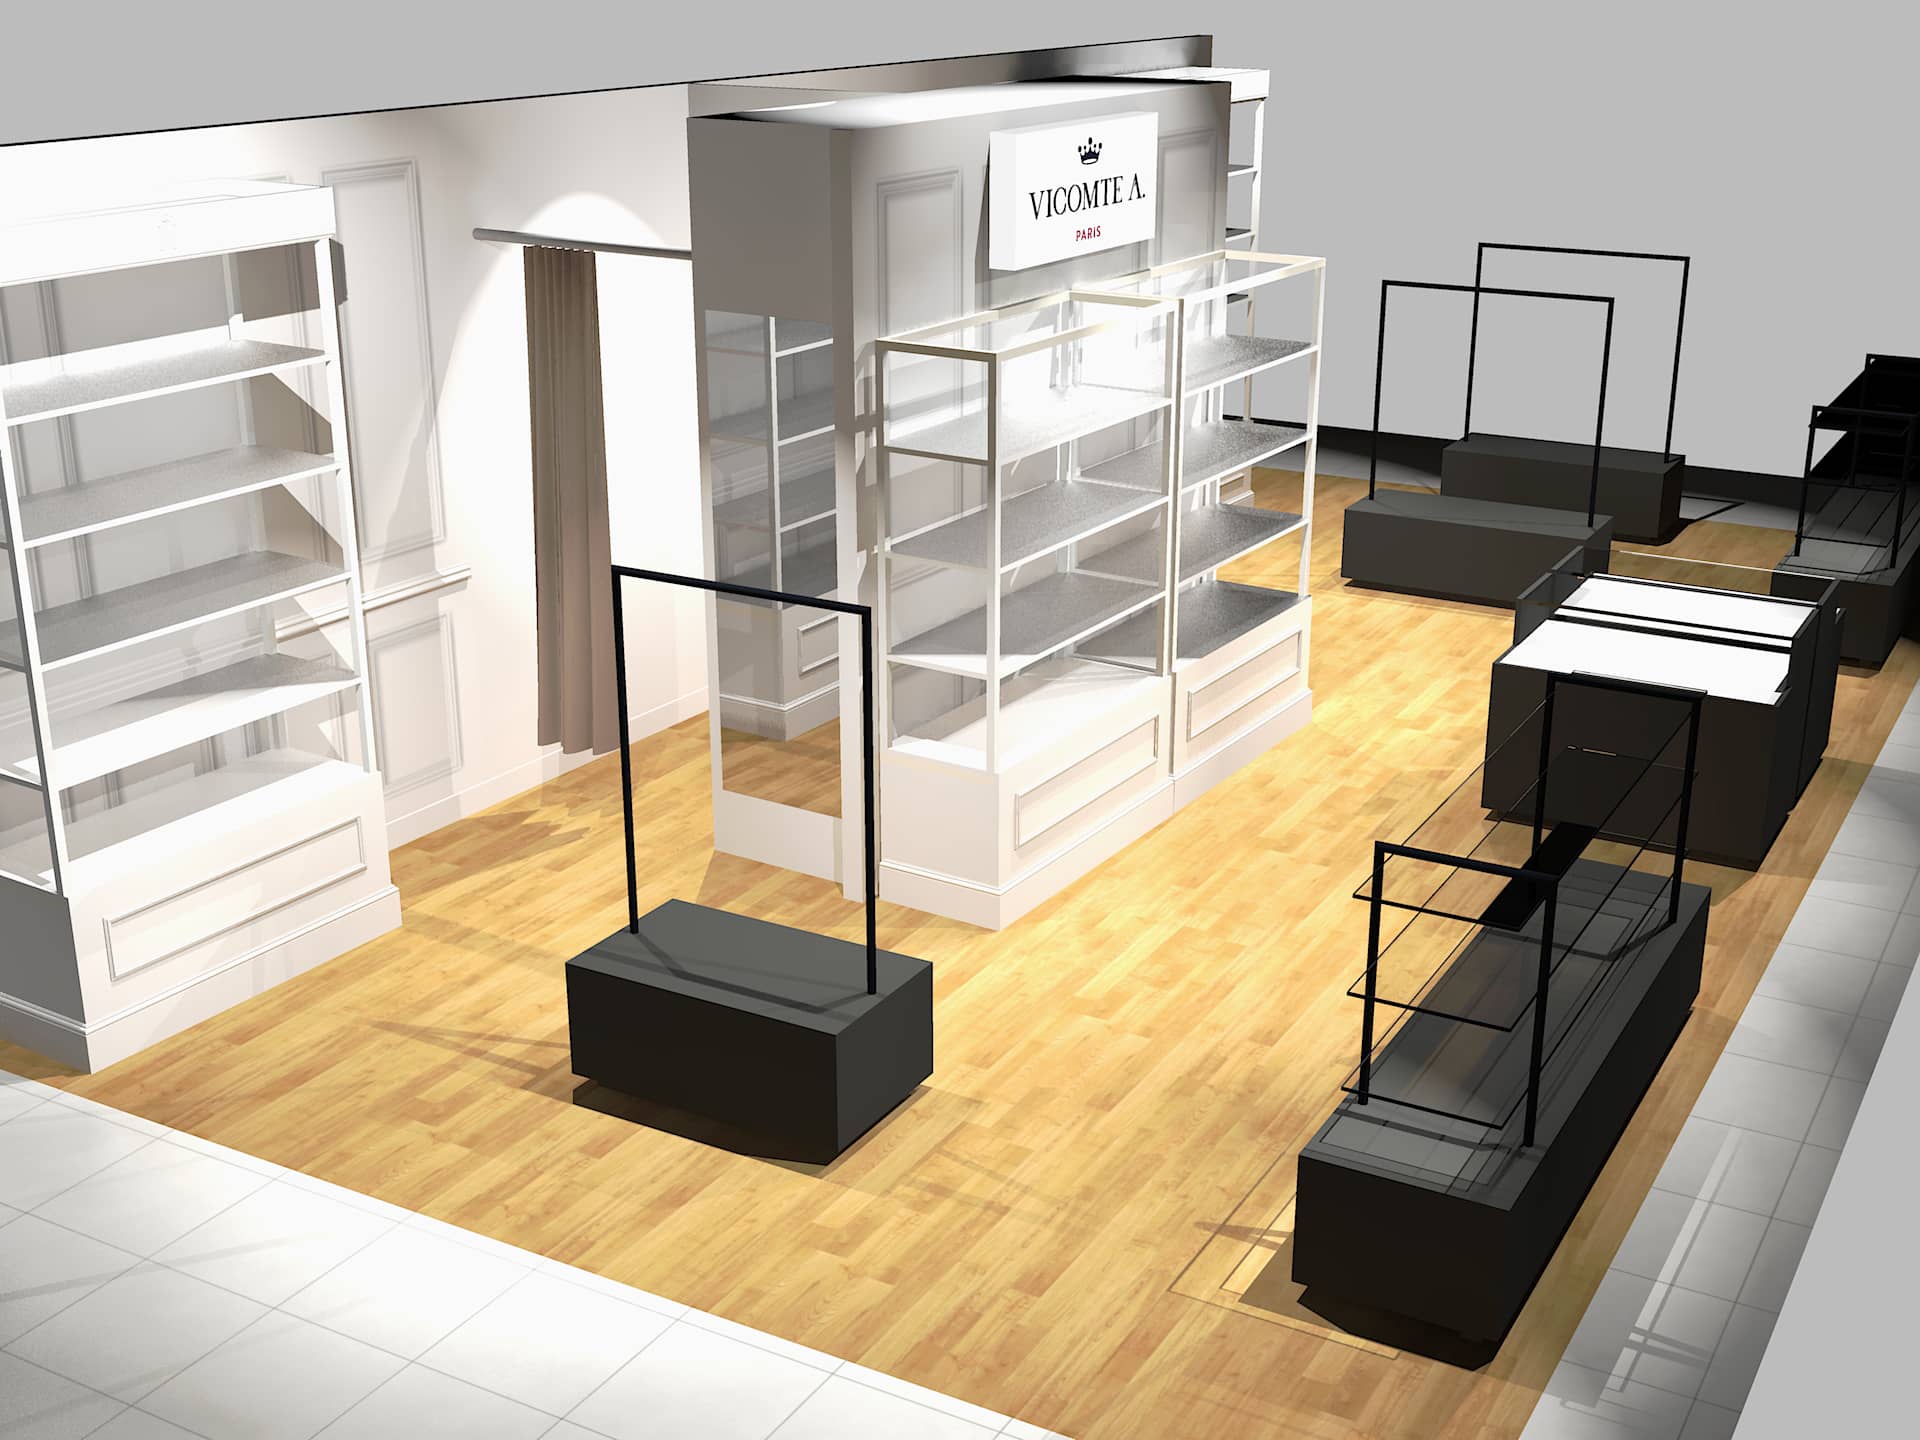 Simulation 3D boutique Vicomte A